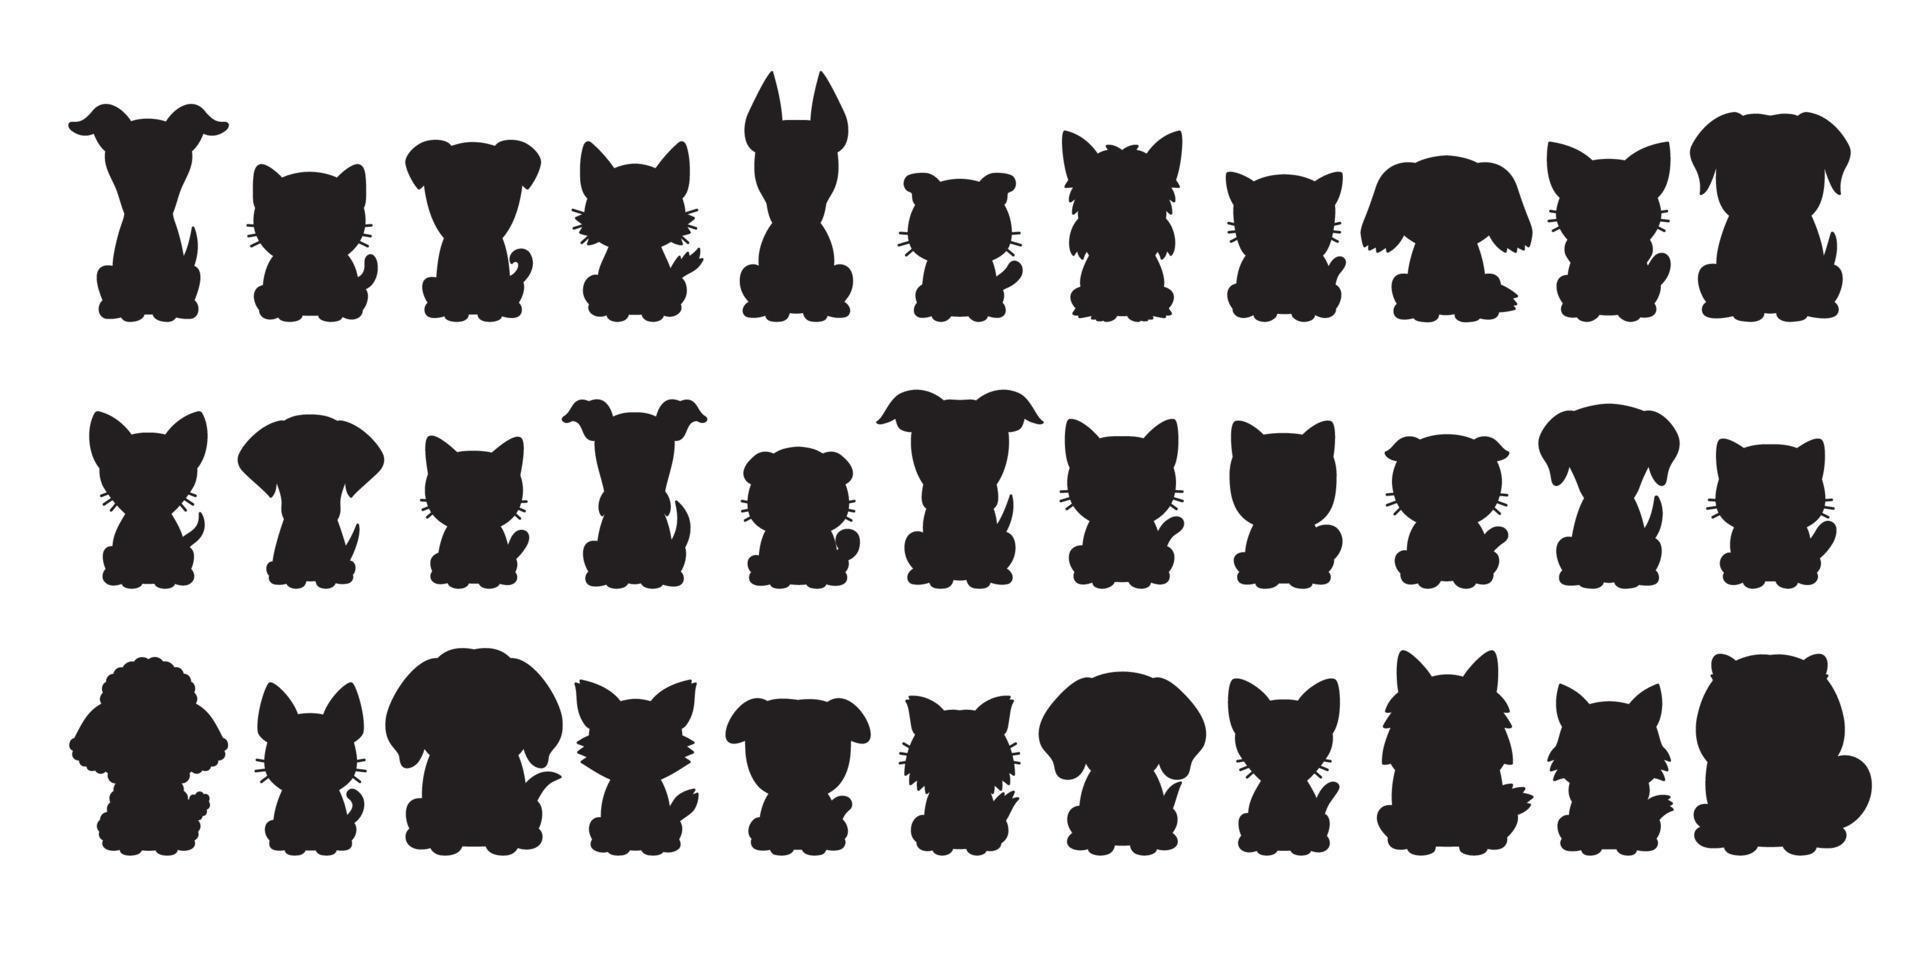 diversi tipi di gatti e cani silhouette vettoriali